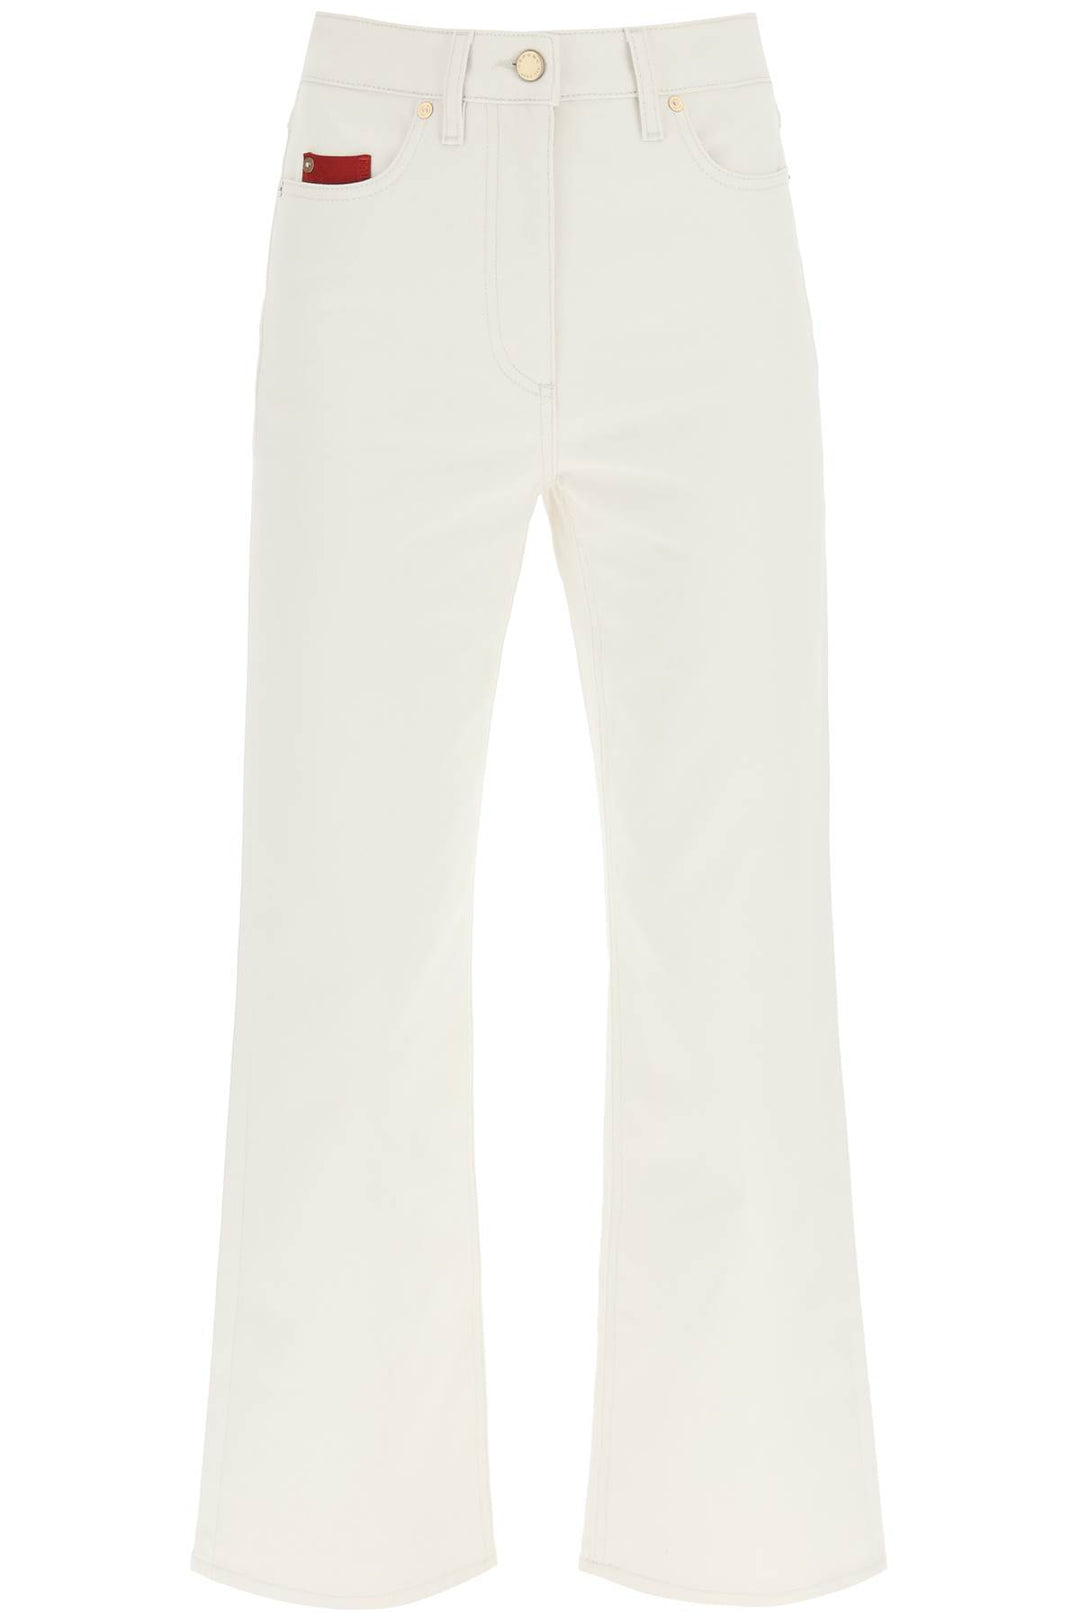 Agnona cotton cashmere jeans-0